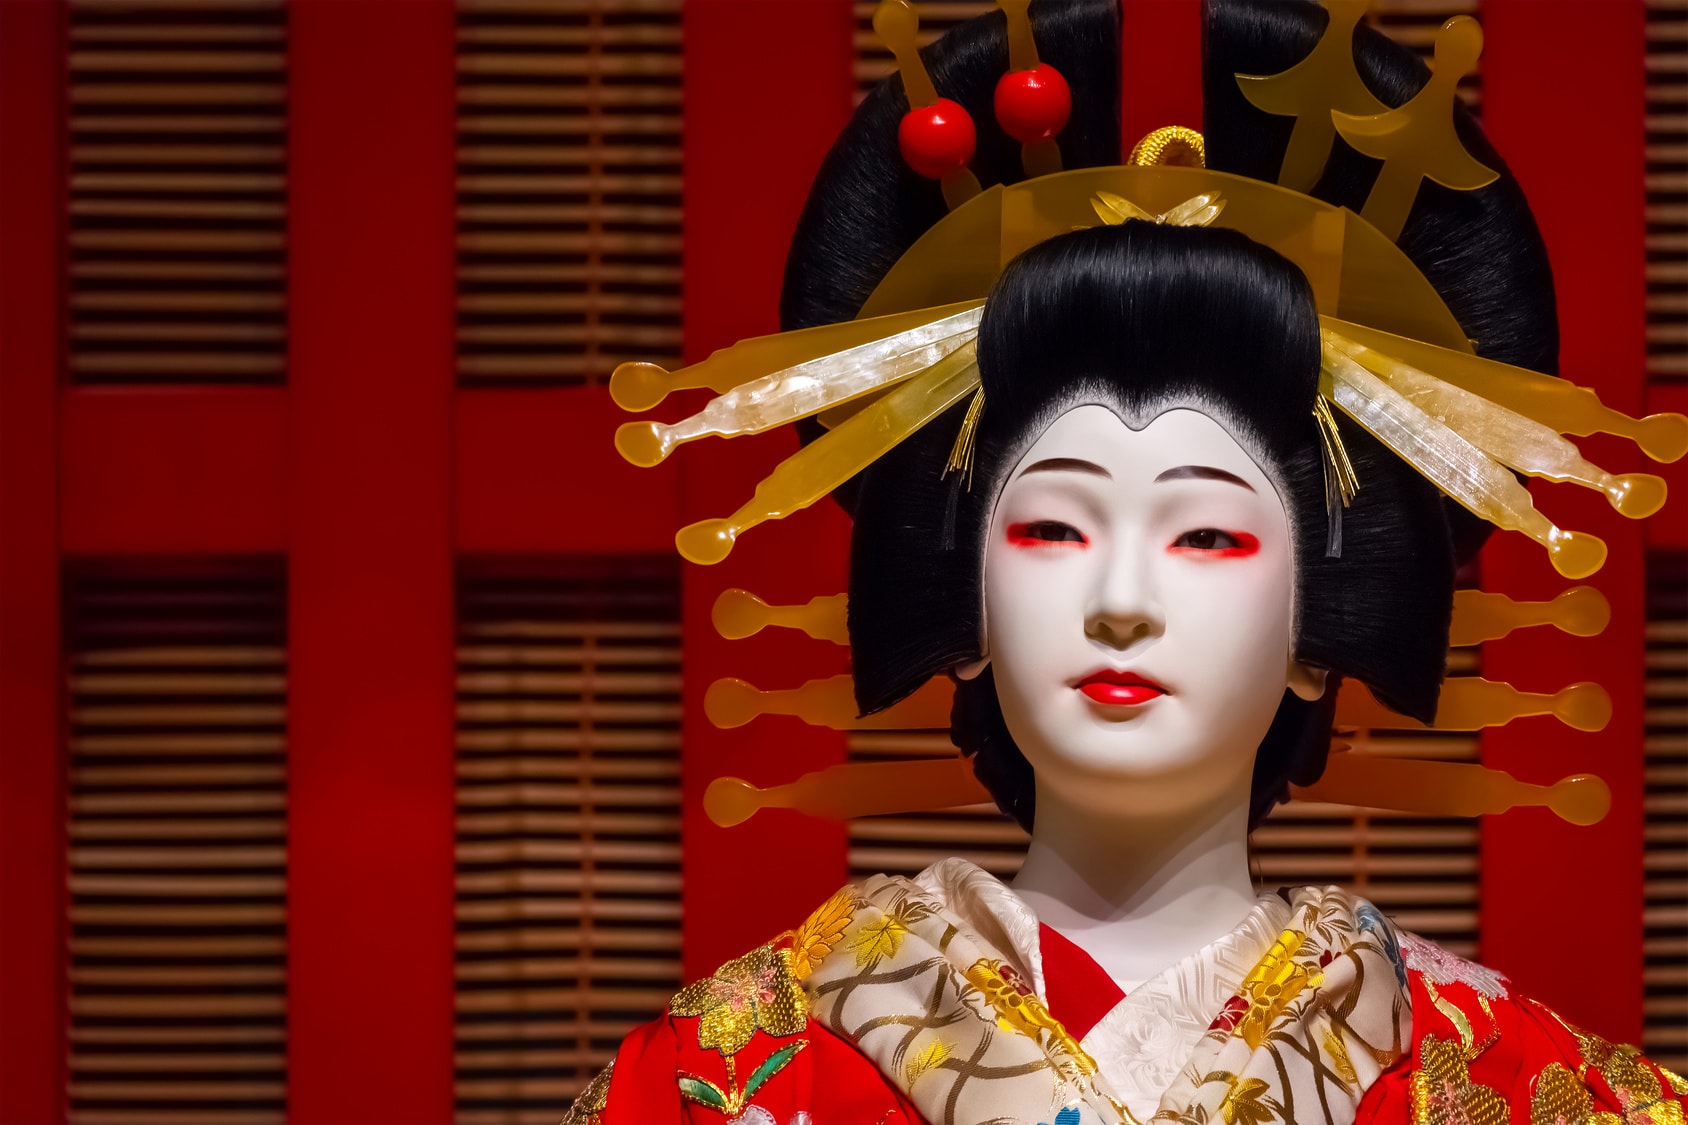 歌舞伎誕生の経緯から歴史について にほんご日和